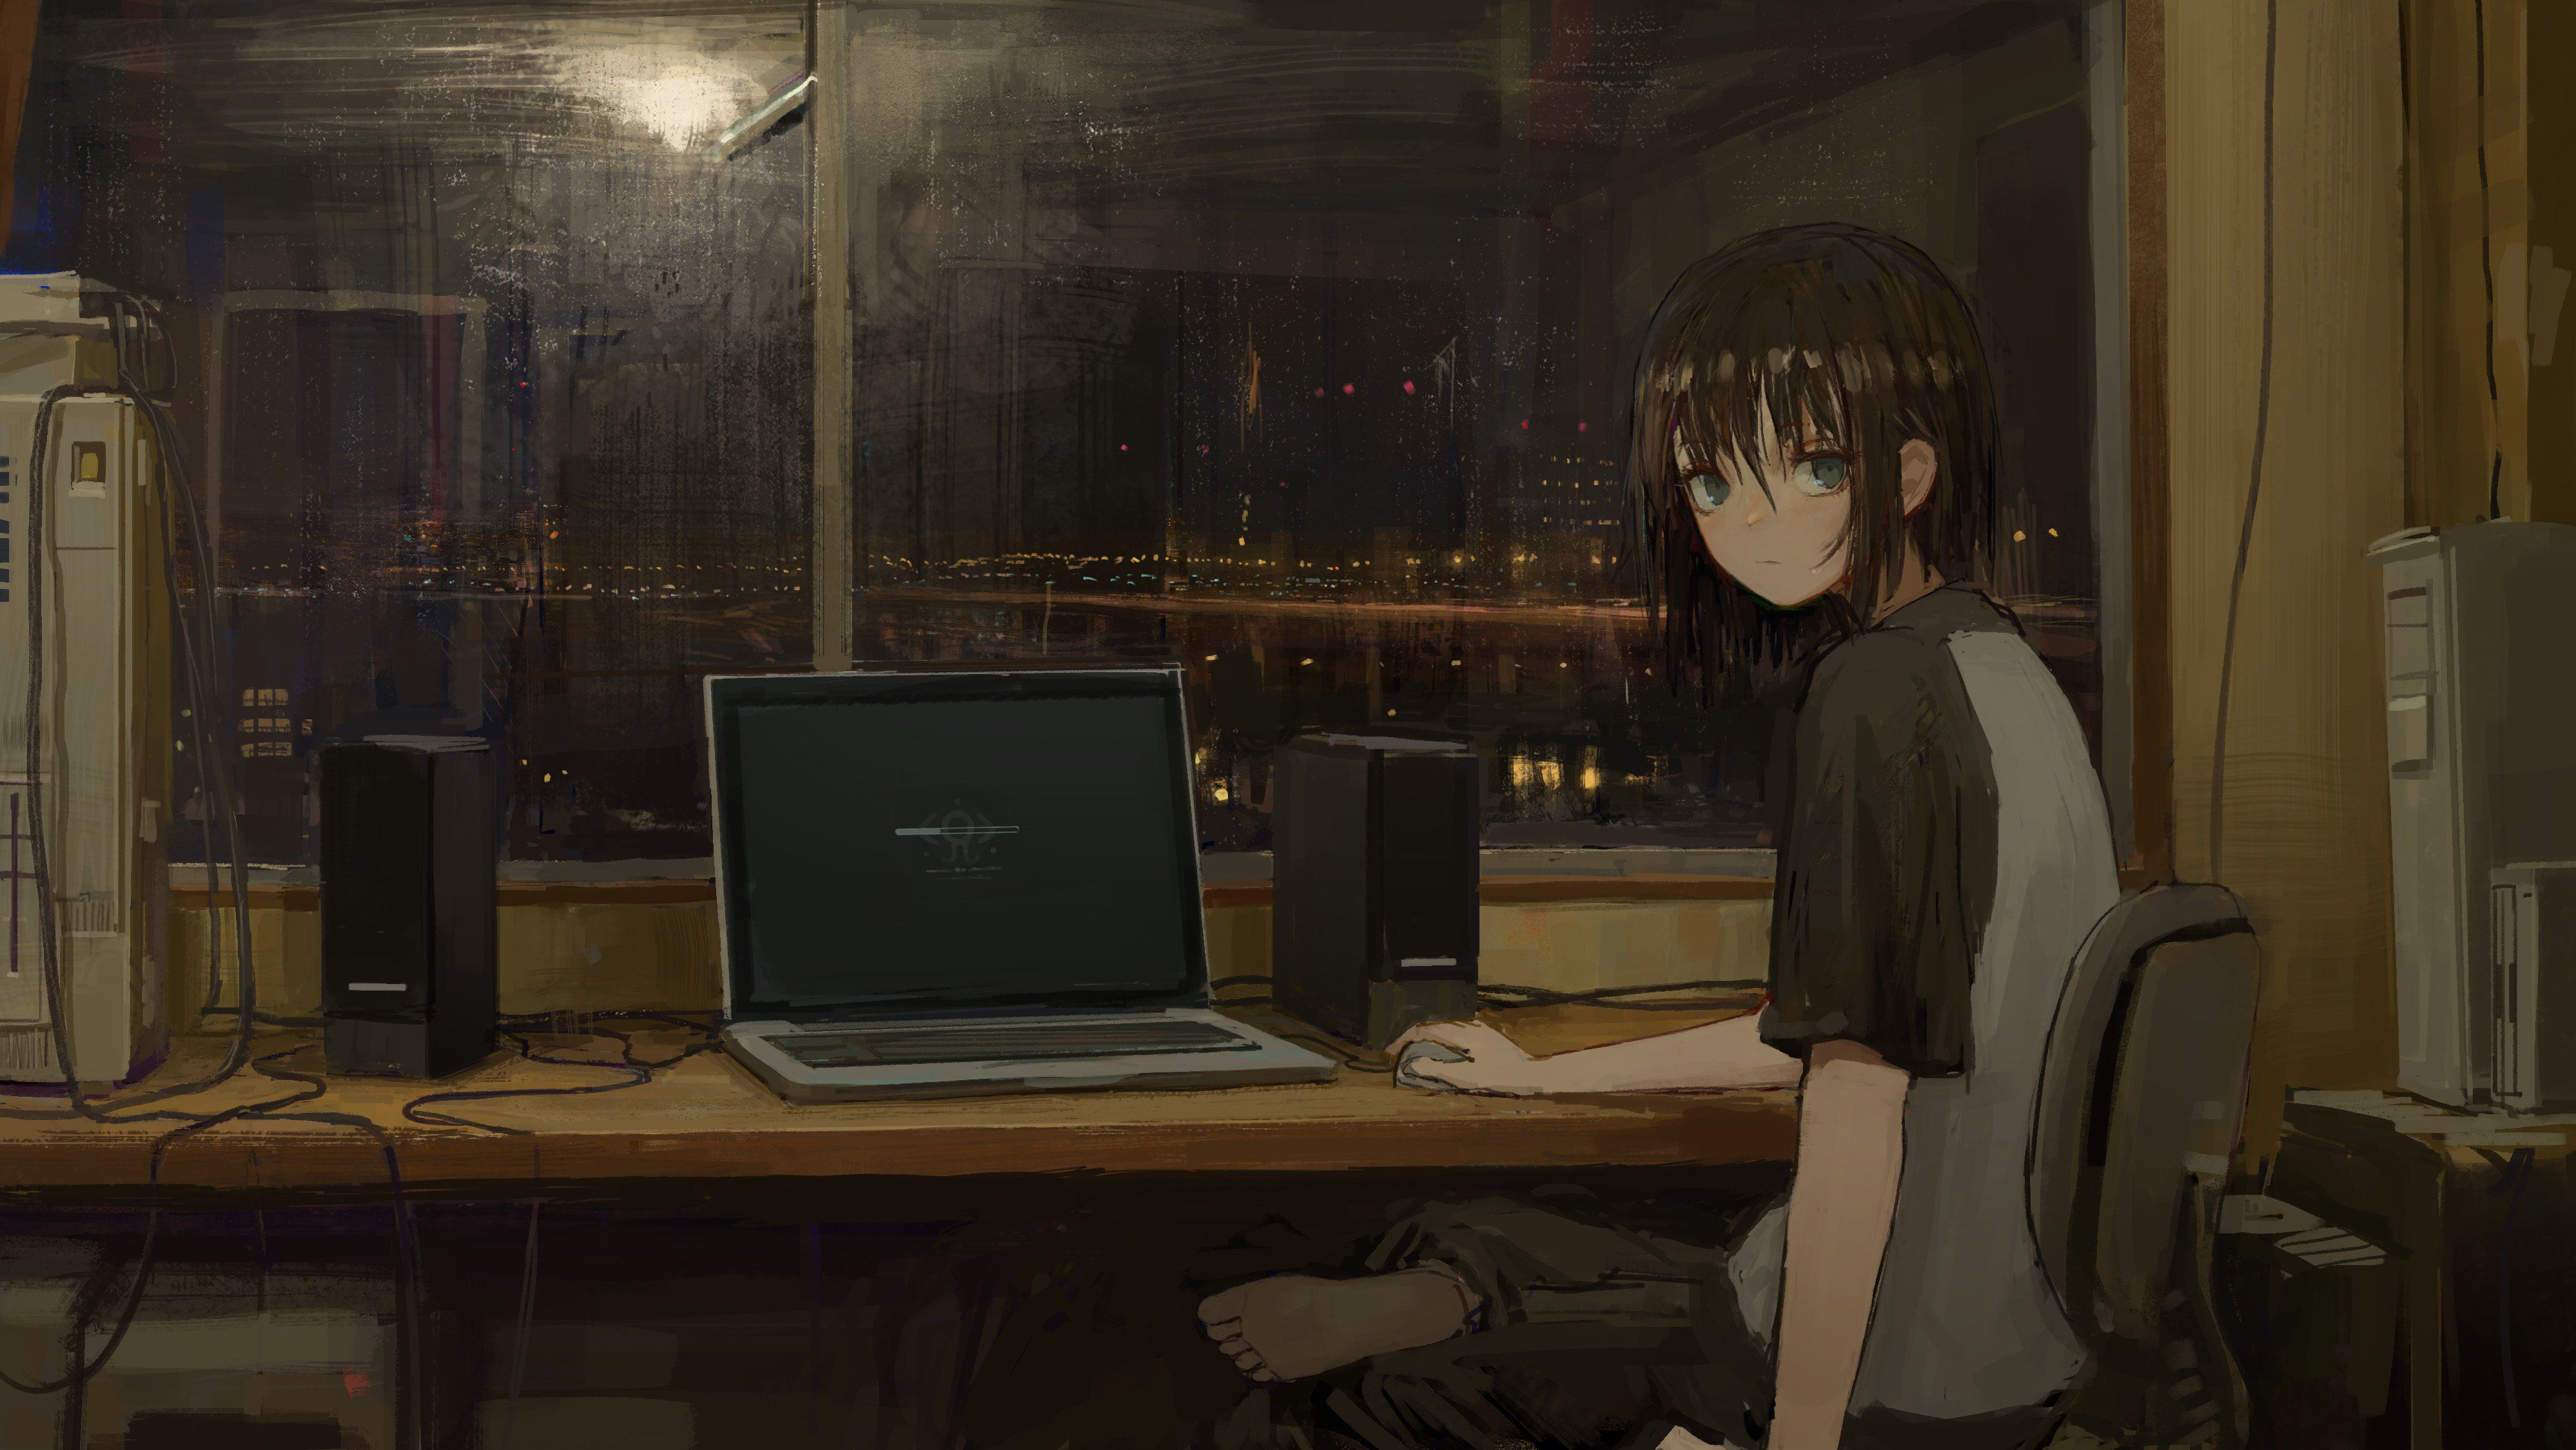 Download Dark Anime Anime Wallpaper Aesthetic Desktop Gif